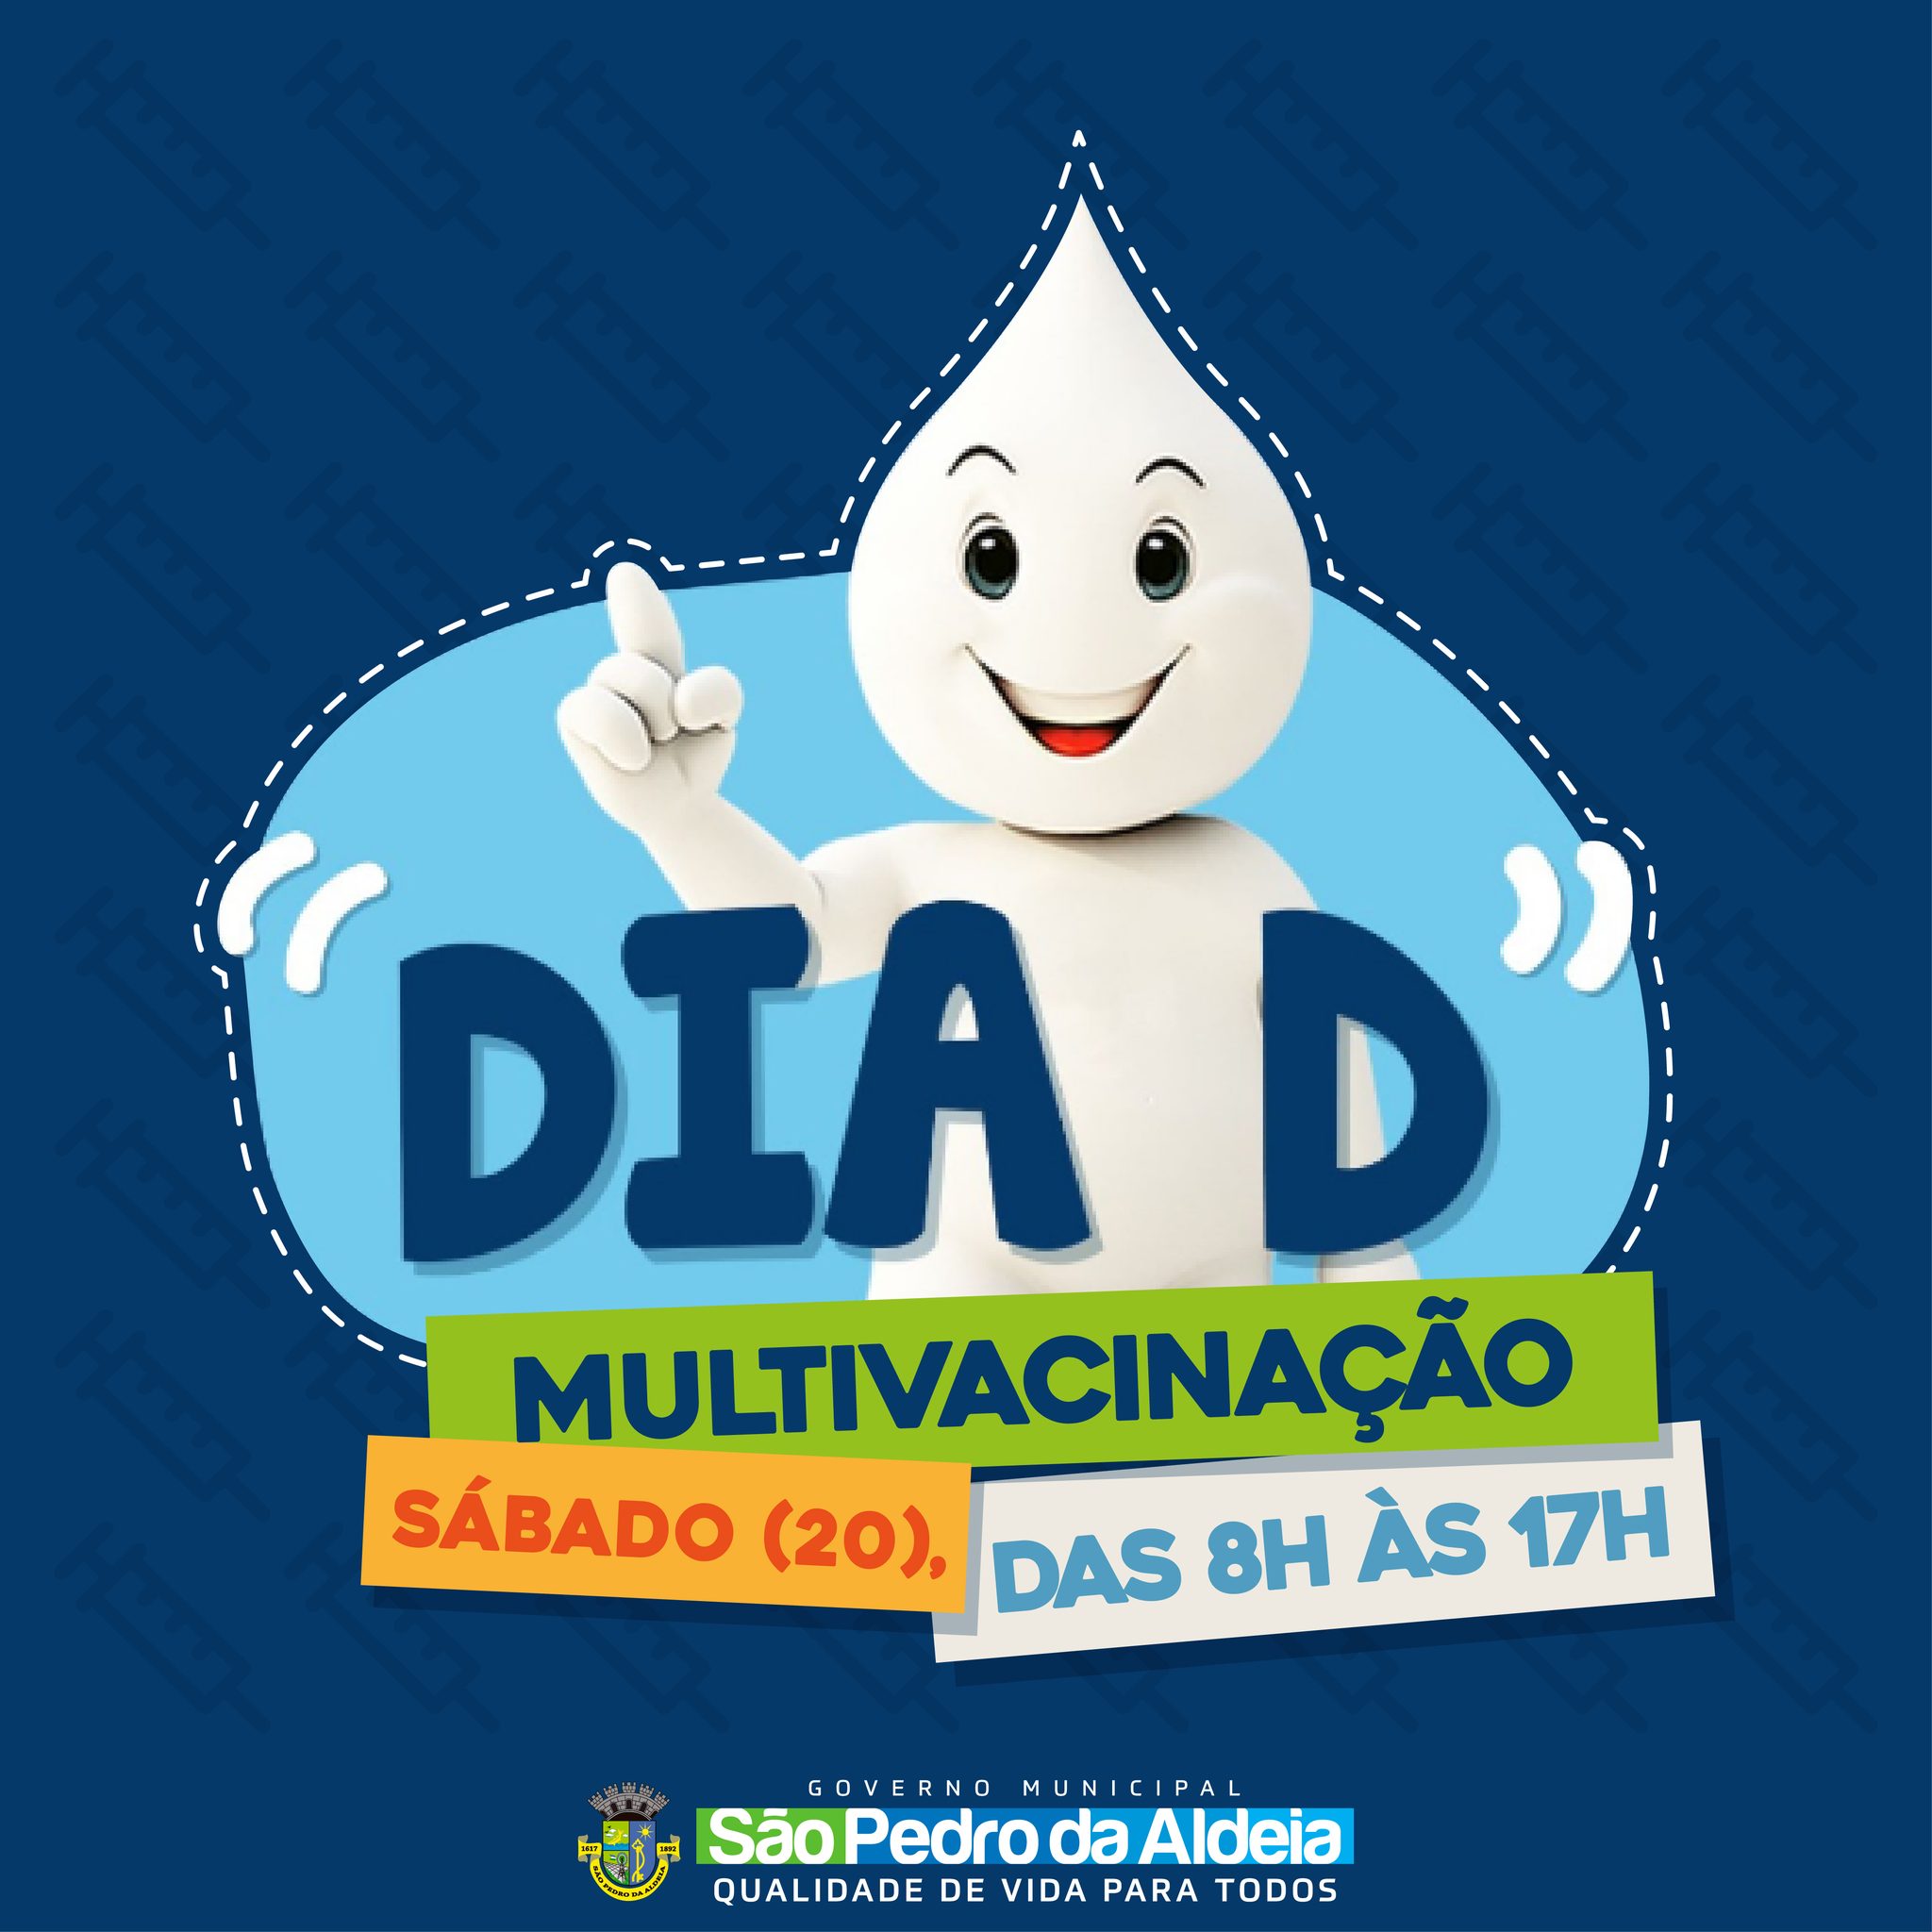 Secretaria de Saúde de São Pedro da Aldeia promove Dia D de multivacinação neste sábado (20)